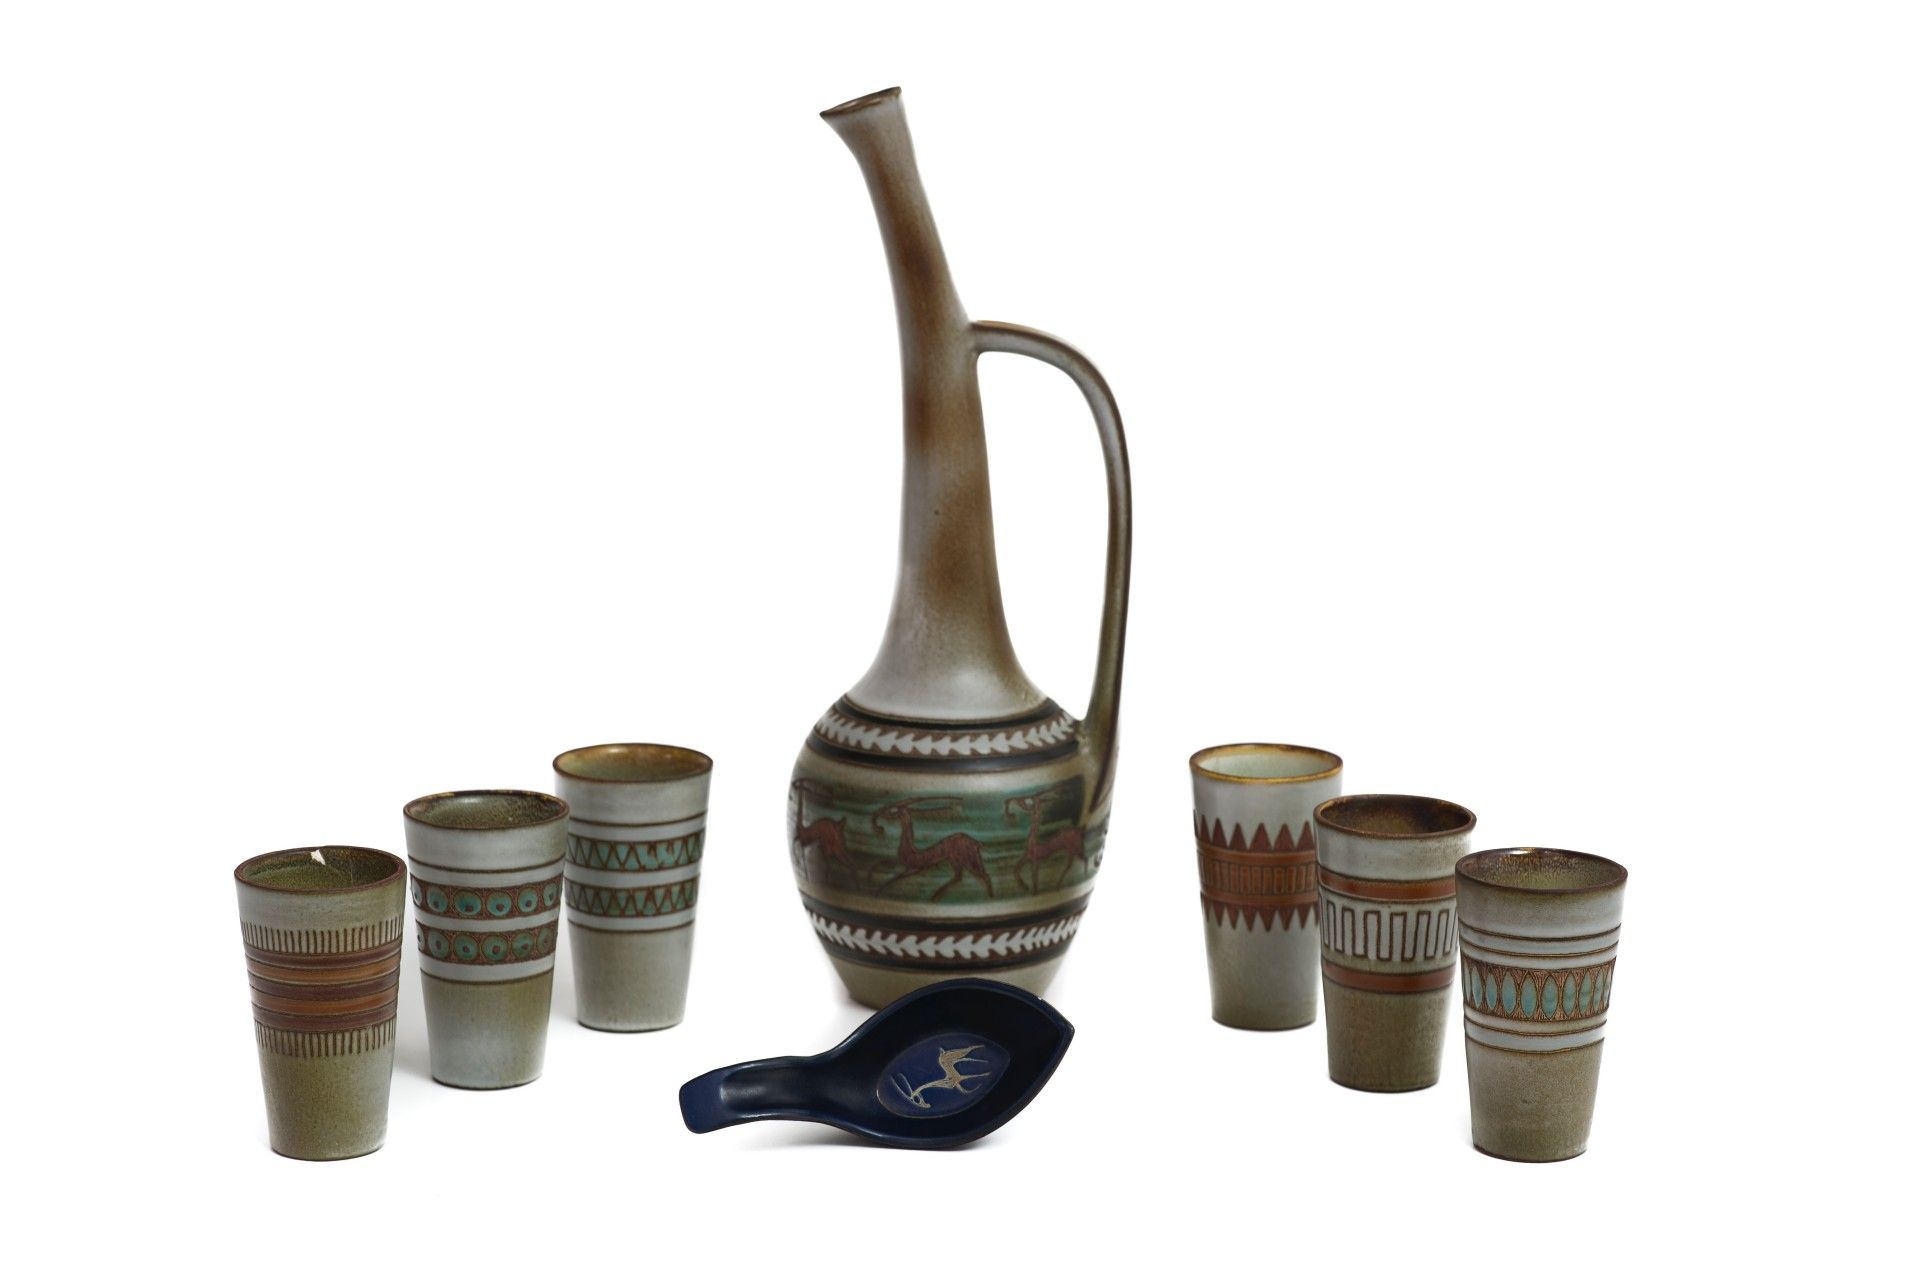 René MAUREL (1910 - 1986) 勒内-毛雷尔 (1910 - 1986)
服务

釉面陶瓷服务，包括一个水壶和六个高脚杯，附带一个盘子
芯片&hellip;